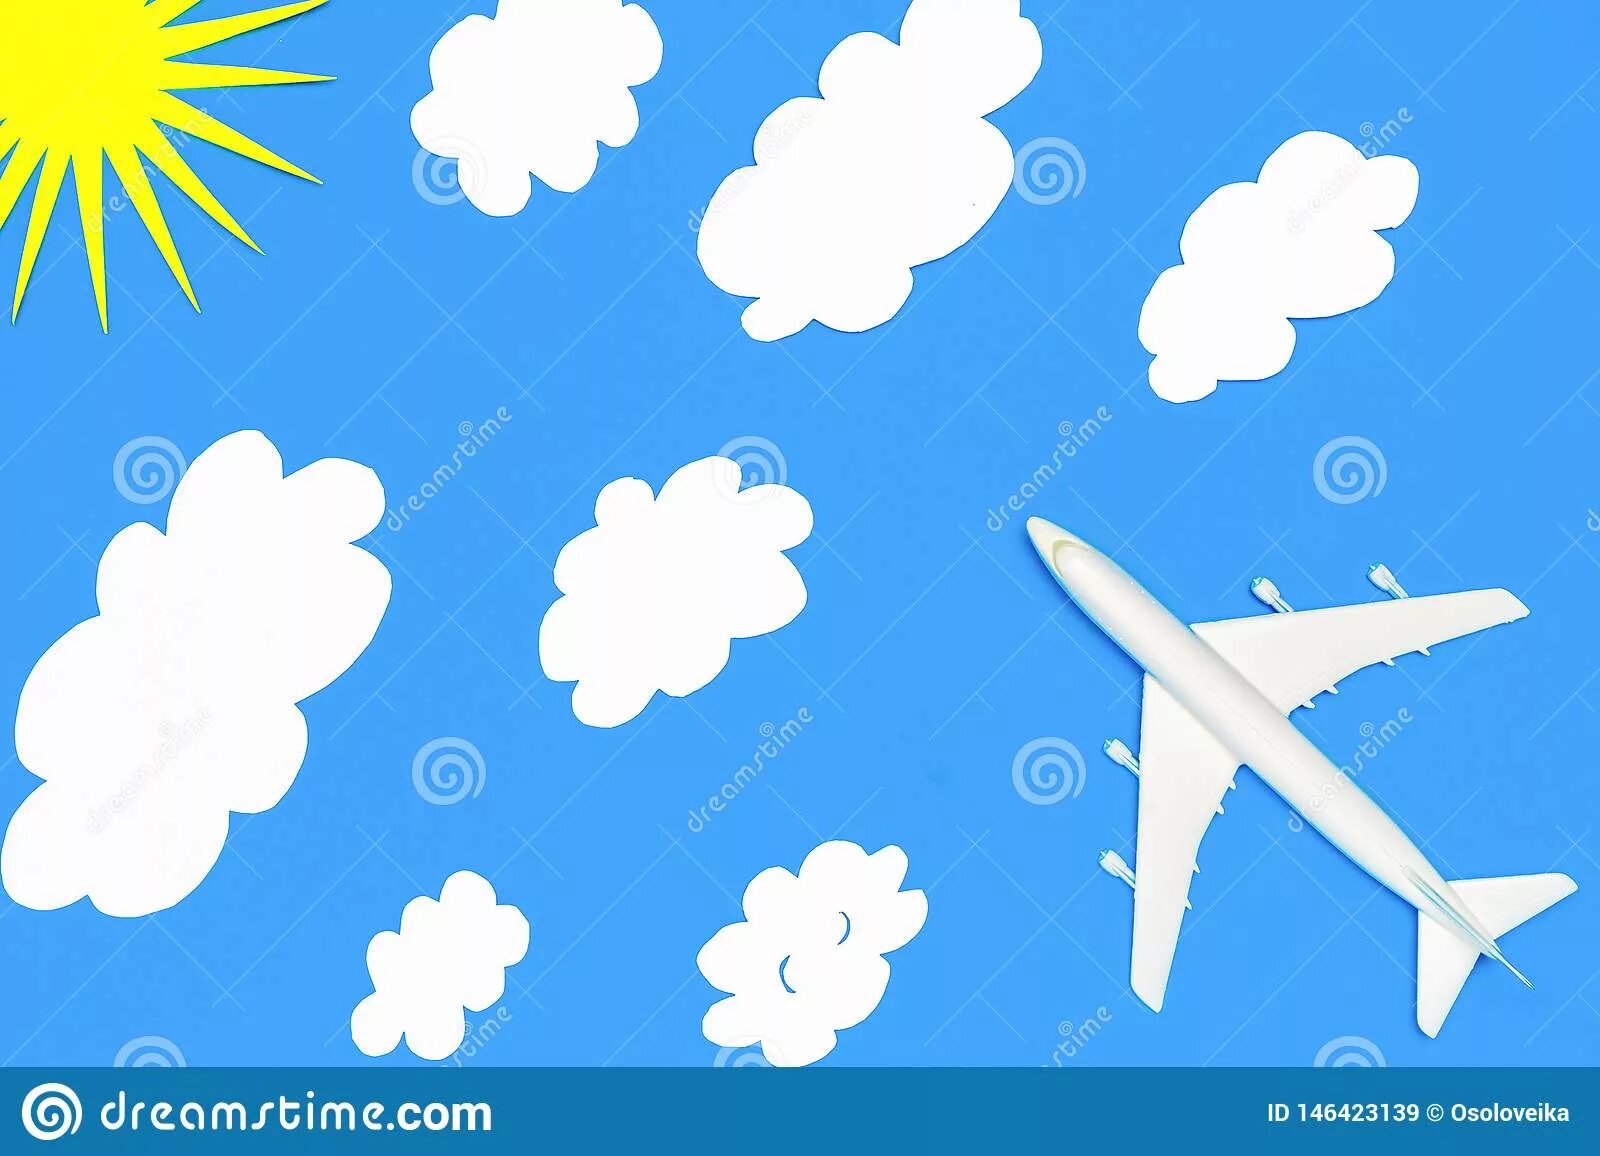 Рисование самолет летит сквозь облака средняя группа. Самолеты летят сквозь облака. Рисование в средней группе самолеты летят. Самолет летит в облаках рисование в средней группе. Самолеты летят сквозь облака рисование в средней группе.